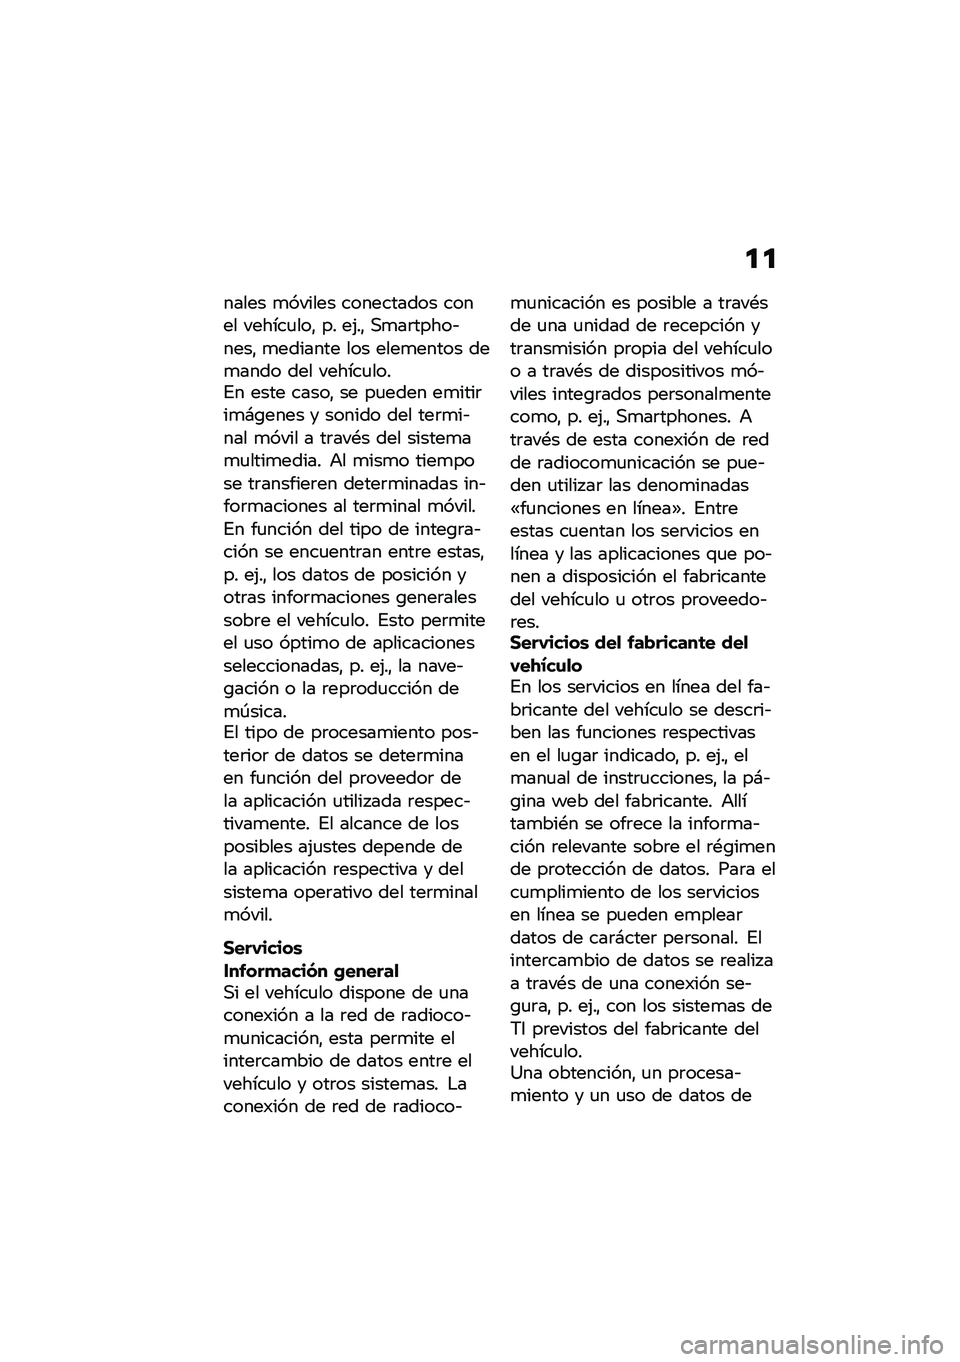 BMW MOTORRAD R NINE T SCRAMBLER 2021  Manual de instrucciones (in Spanish) �
�

����� �
������ ���������� ����� ������
���" �� ��(��" �,�
��	�����&����" �
������� ��� ����
����� ���
���� ��� ������
